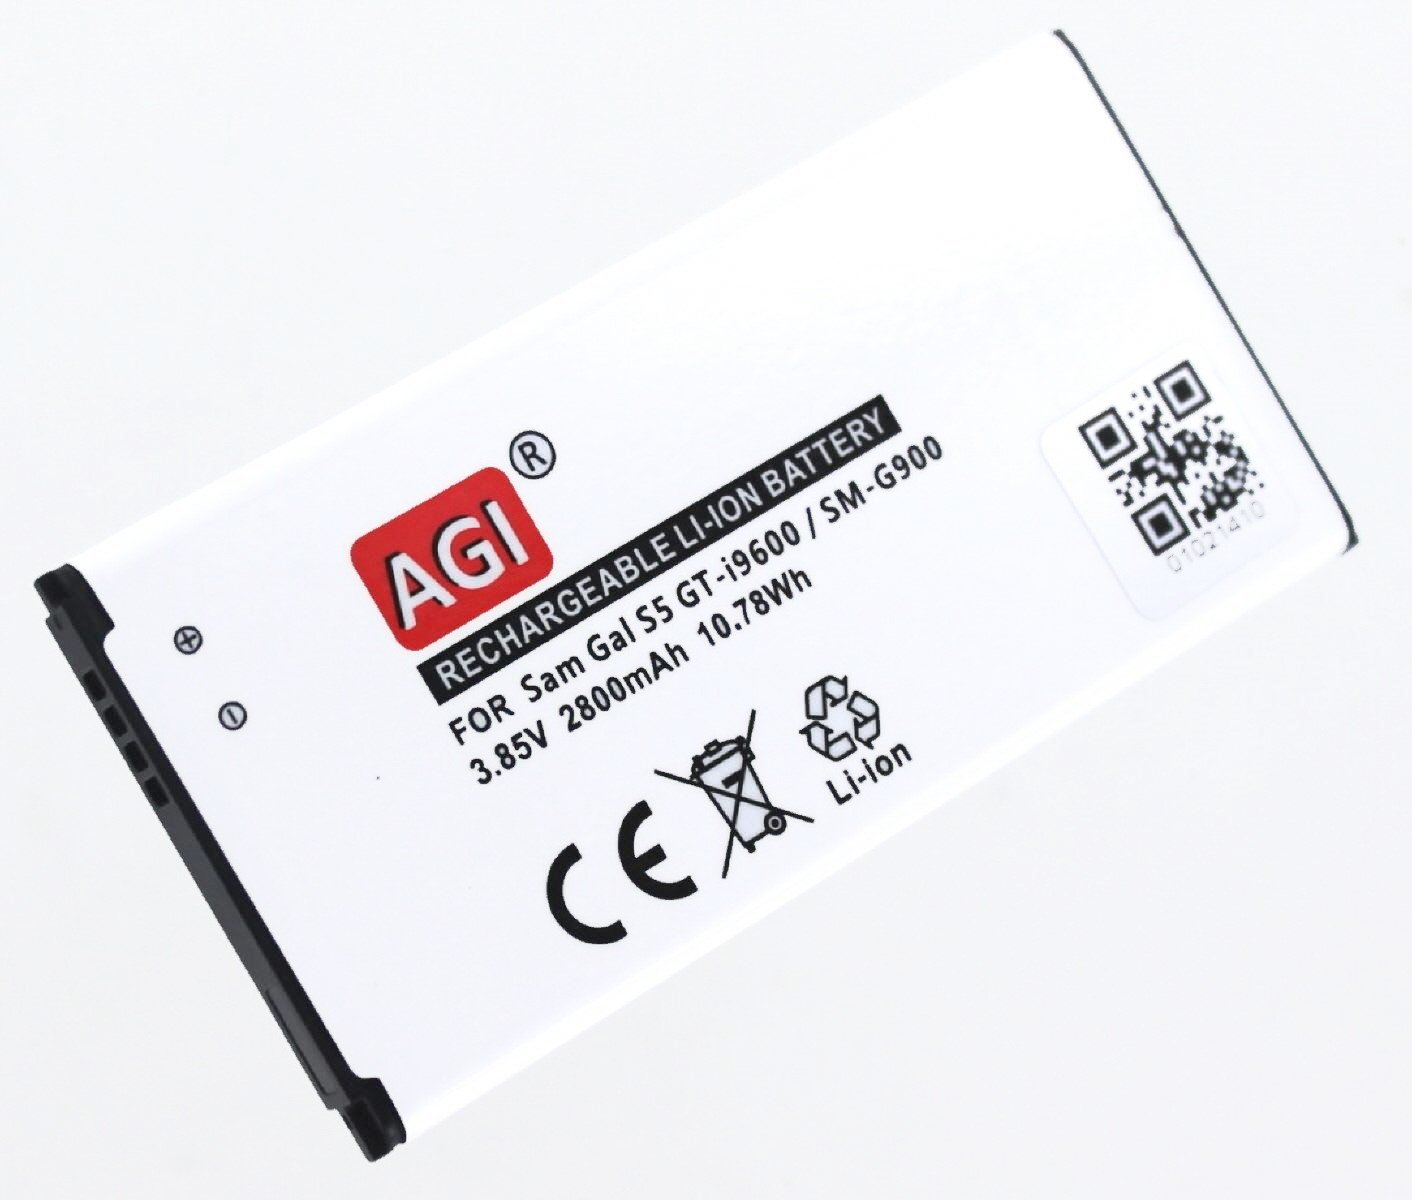 AGI Akku Volt, Galaxy Handy-/Smartphoneakku, kompatibel Li-Ion, mit 2800 3.85 mAh Li-Ion S5 Samsung